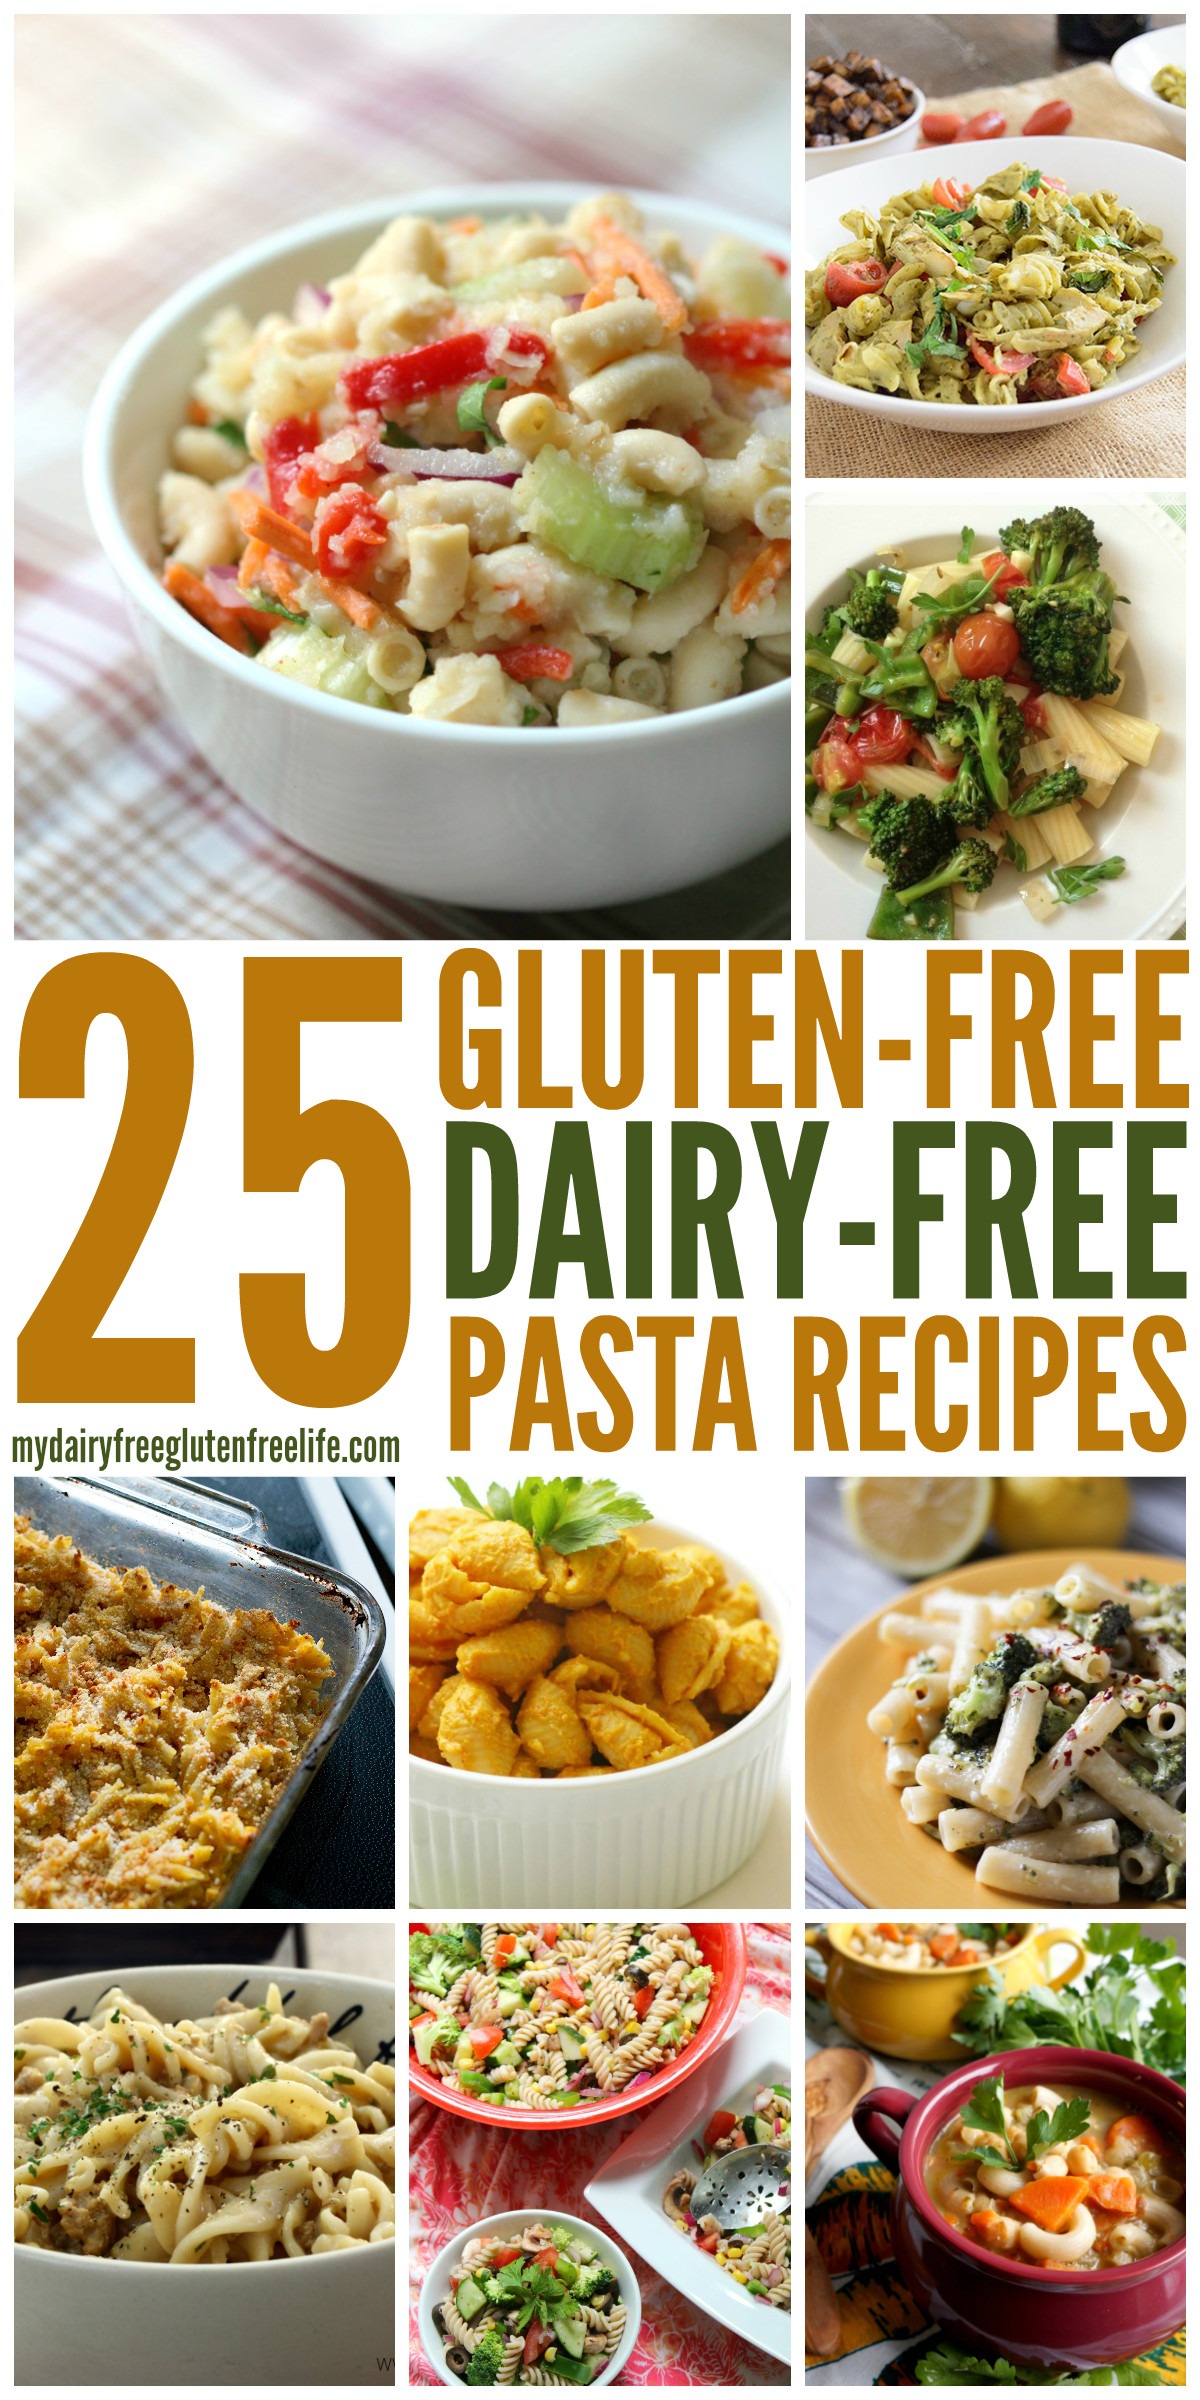 Gluten And Dairy Free Recipes
 Gluten Free Pasta Dishes dairyfree My DairyFree